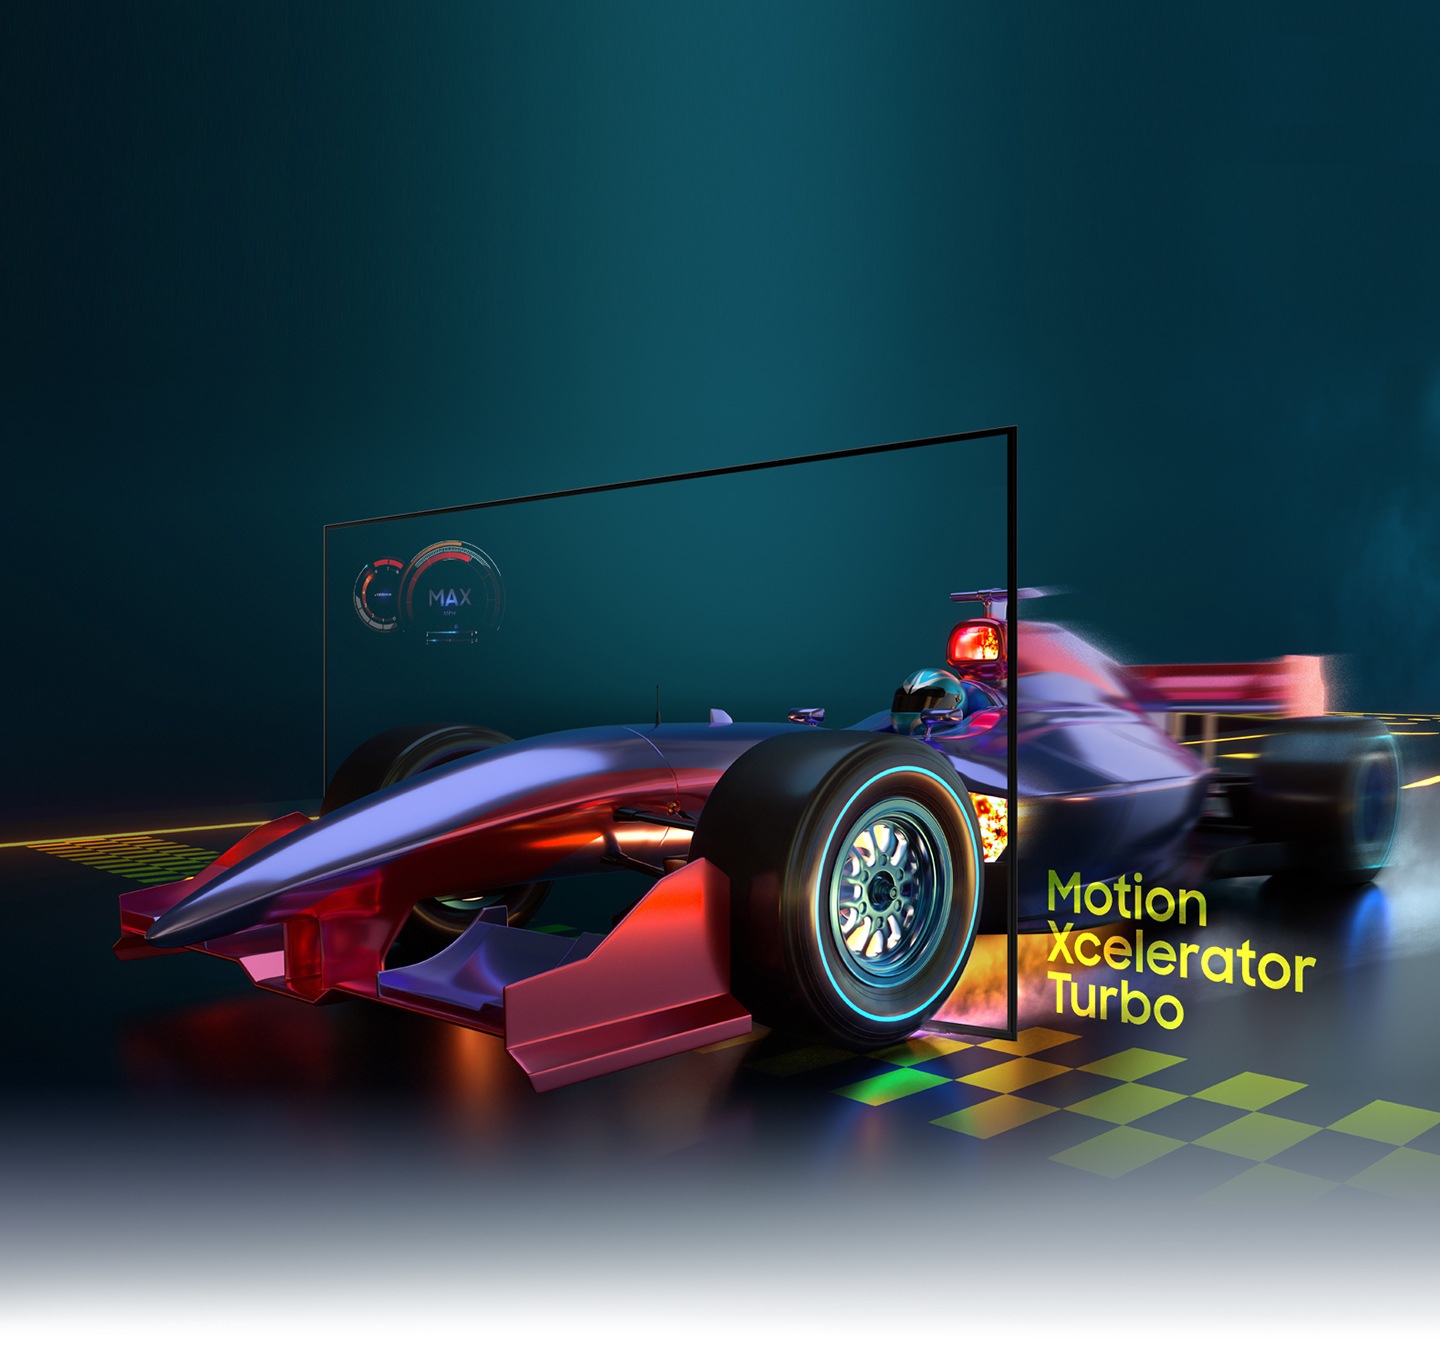 Hình ảnh của một chiếc xe đua trông rõ ràng và hiển thị bên trong màn hình AU9000 nhờ công nghệ Motion Xcelerator Turbo.